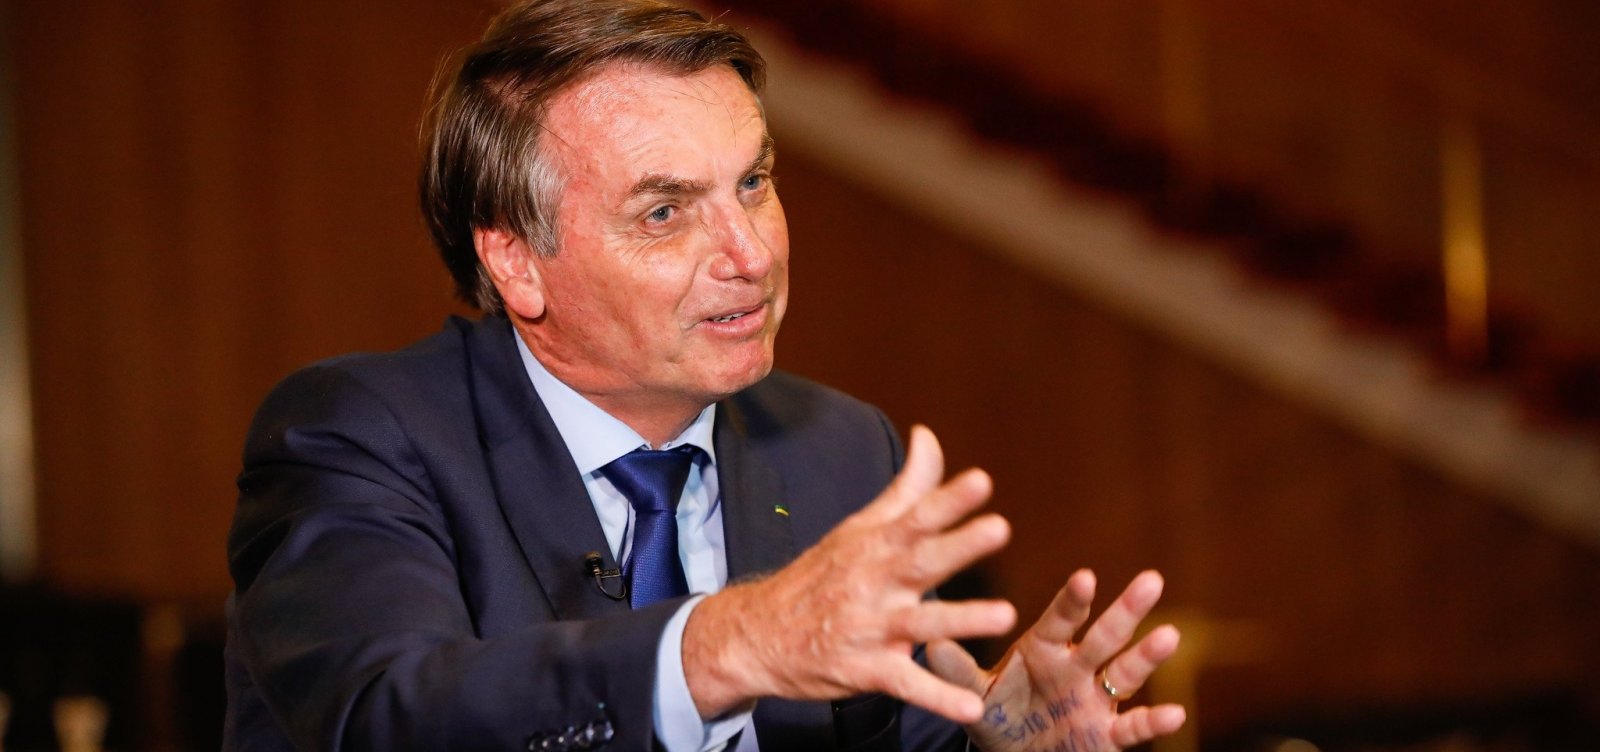 Prefeitos e governadores vão pagar indenização a trabalhador por paralisação, diz Bolsonaro